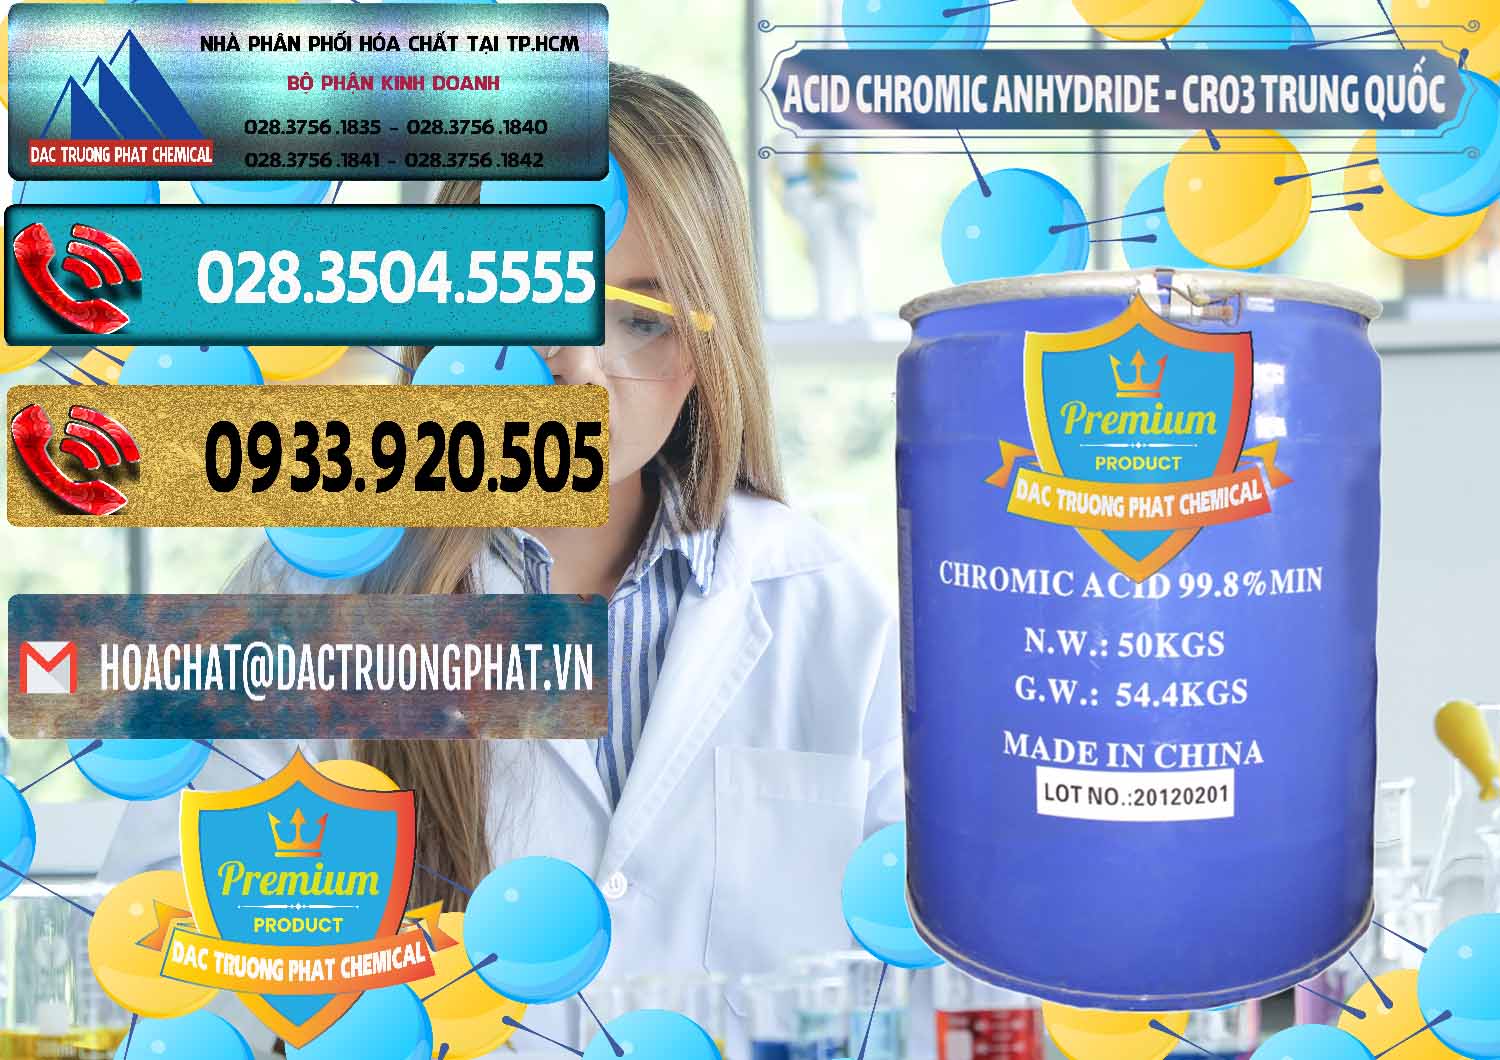 Đơn vị chuyên bán và cung ứng Acid Chromic Anhydride - Cromic CRO3 Trung Quốc China - 0007 - Cty chuyên phân phối & cung ứng hóa chất tại TP.HCM - hoachatdetnhuom.com